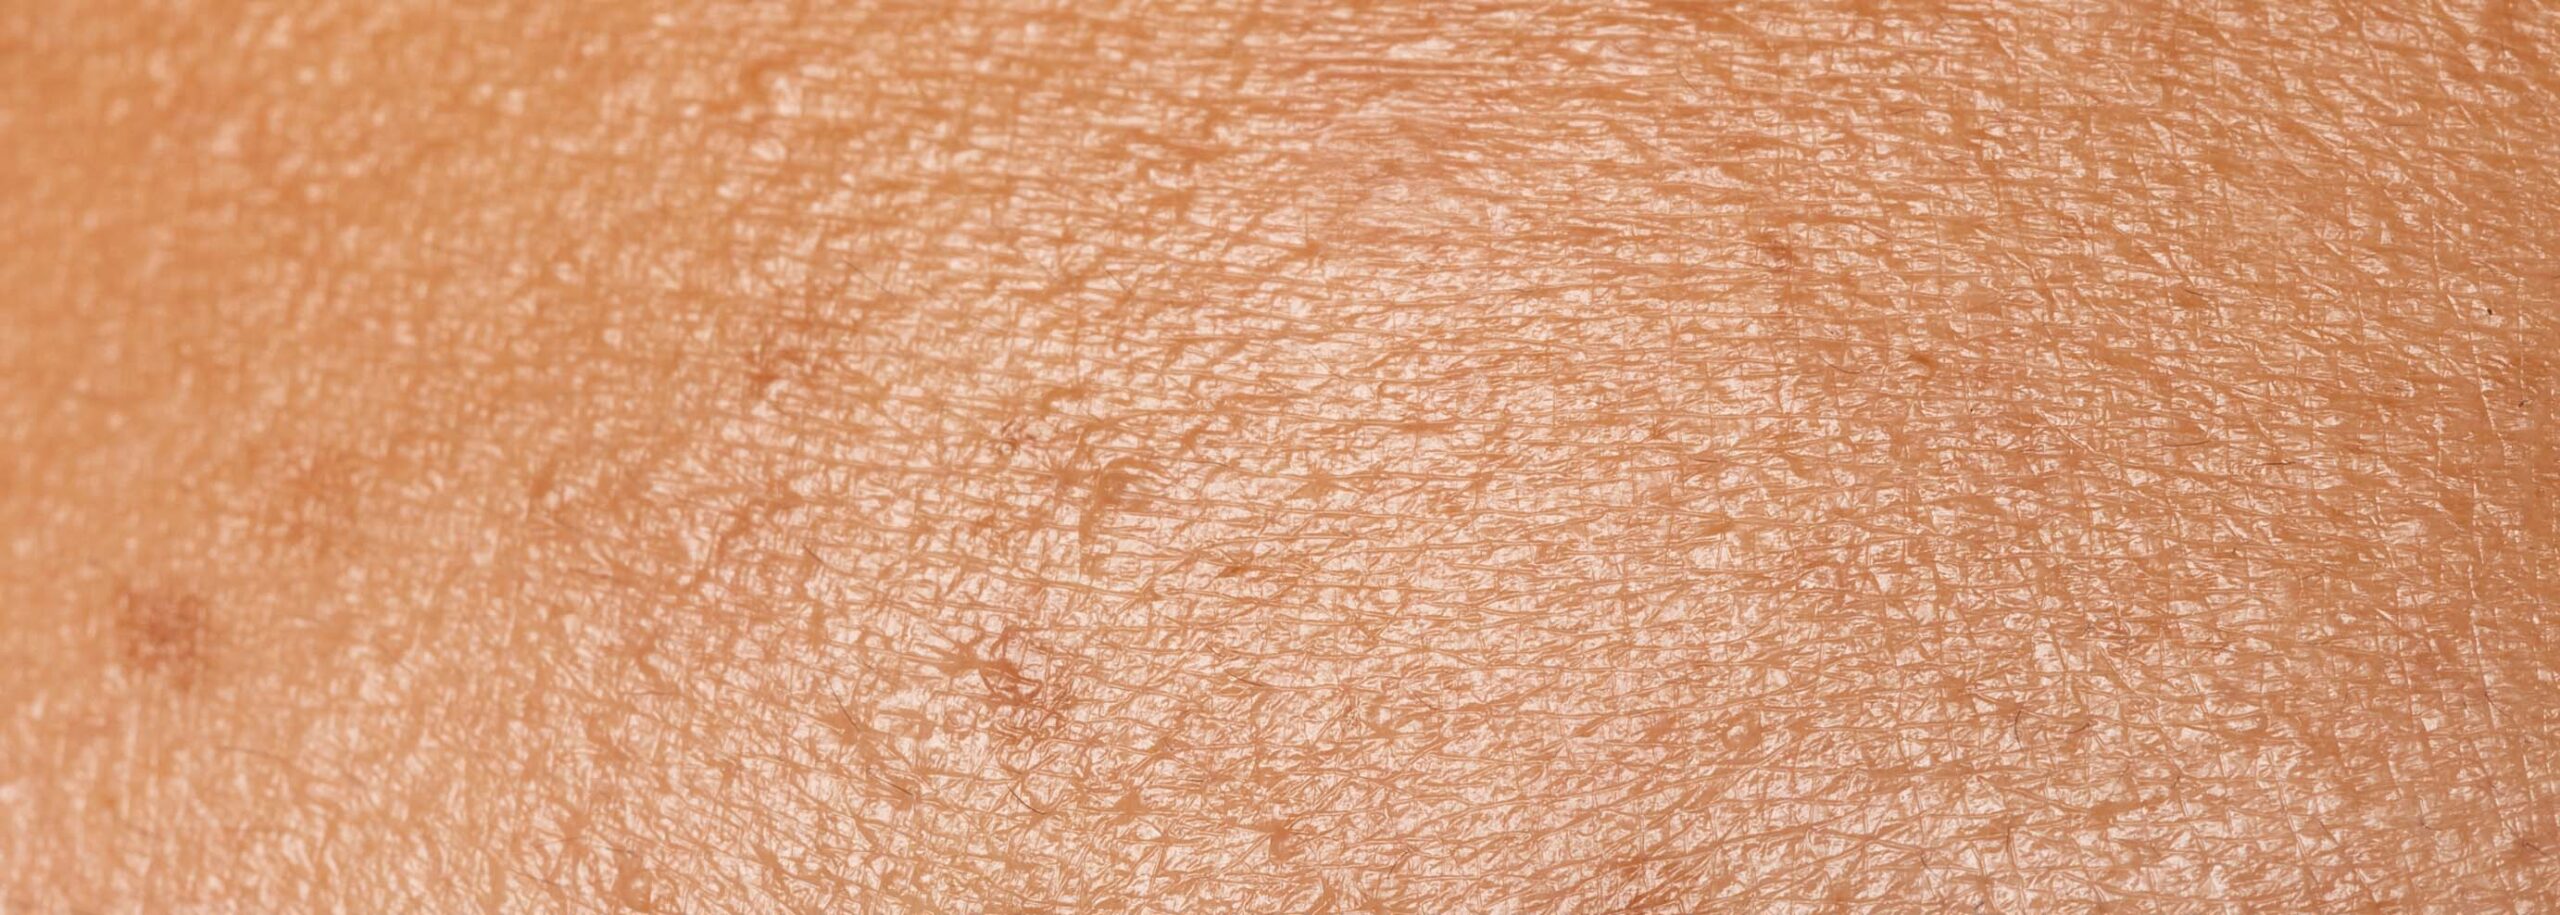 Macro shot of oily skin